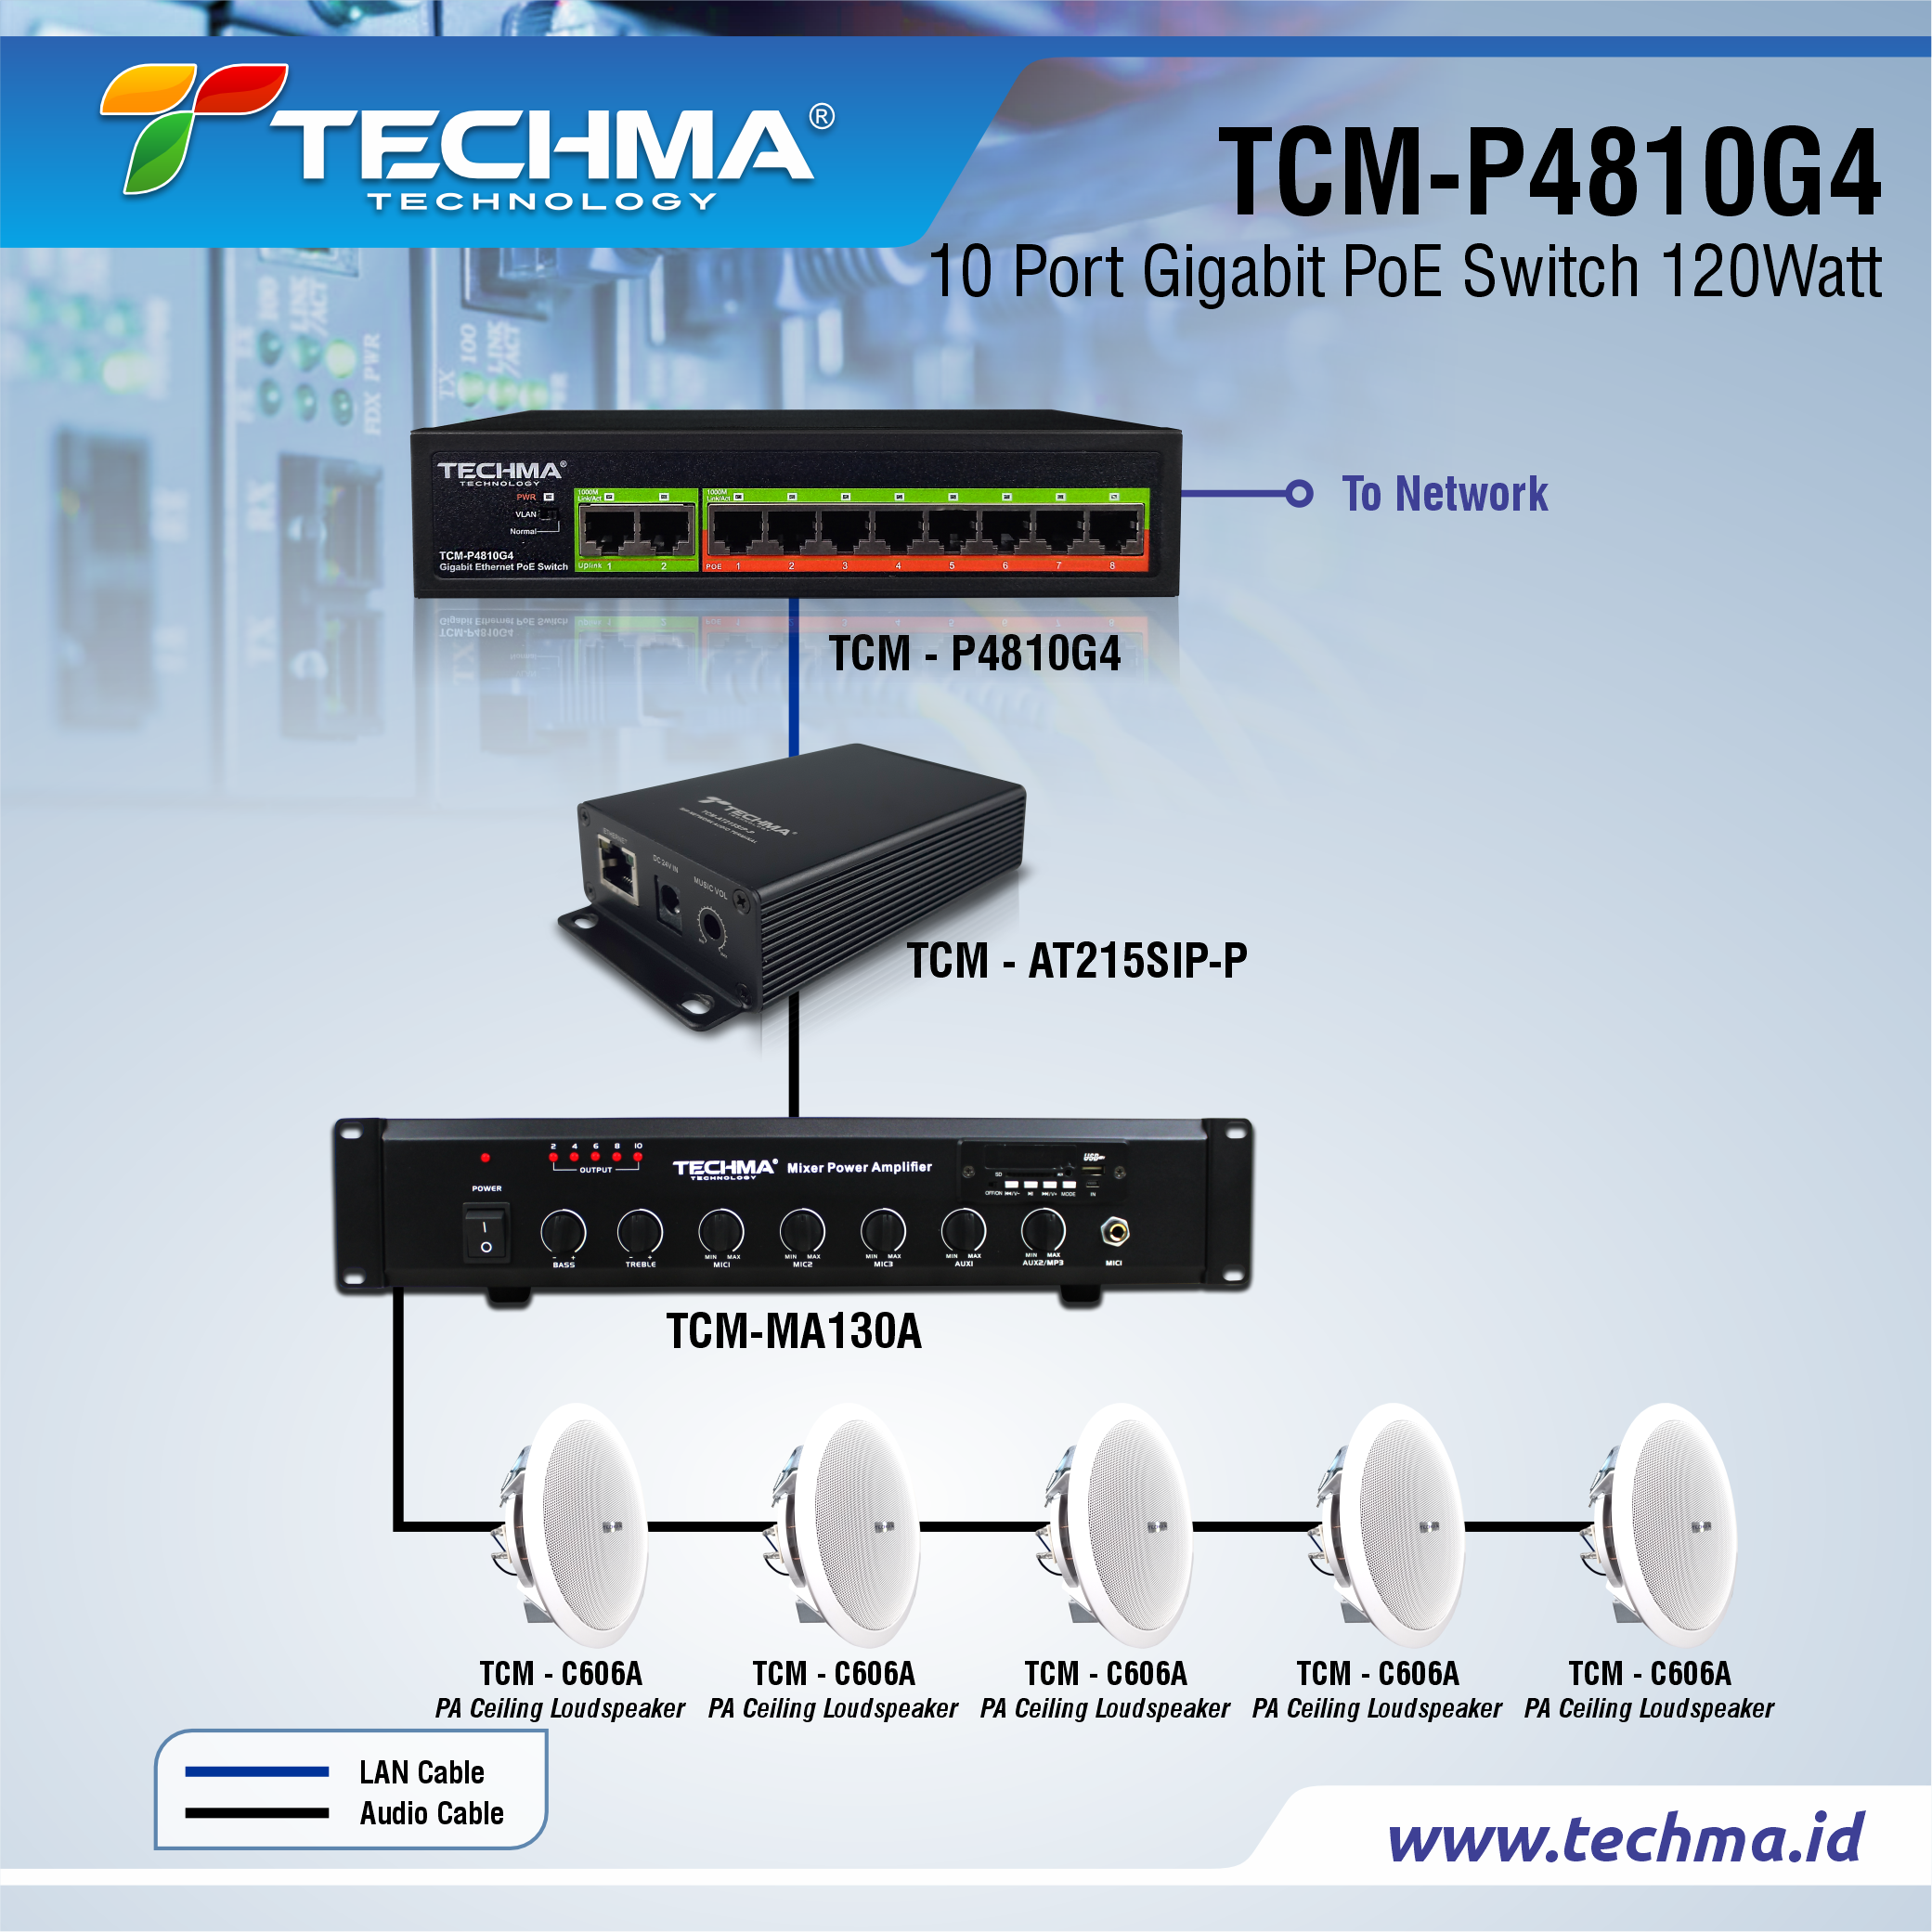 TCM-P4810G4 web 6